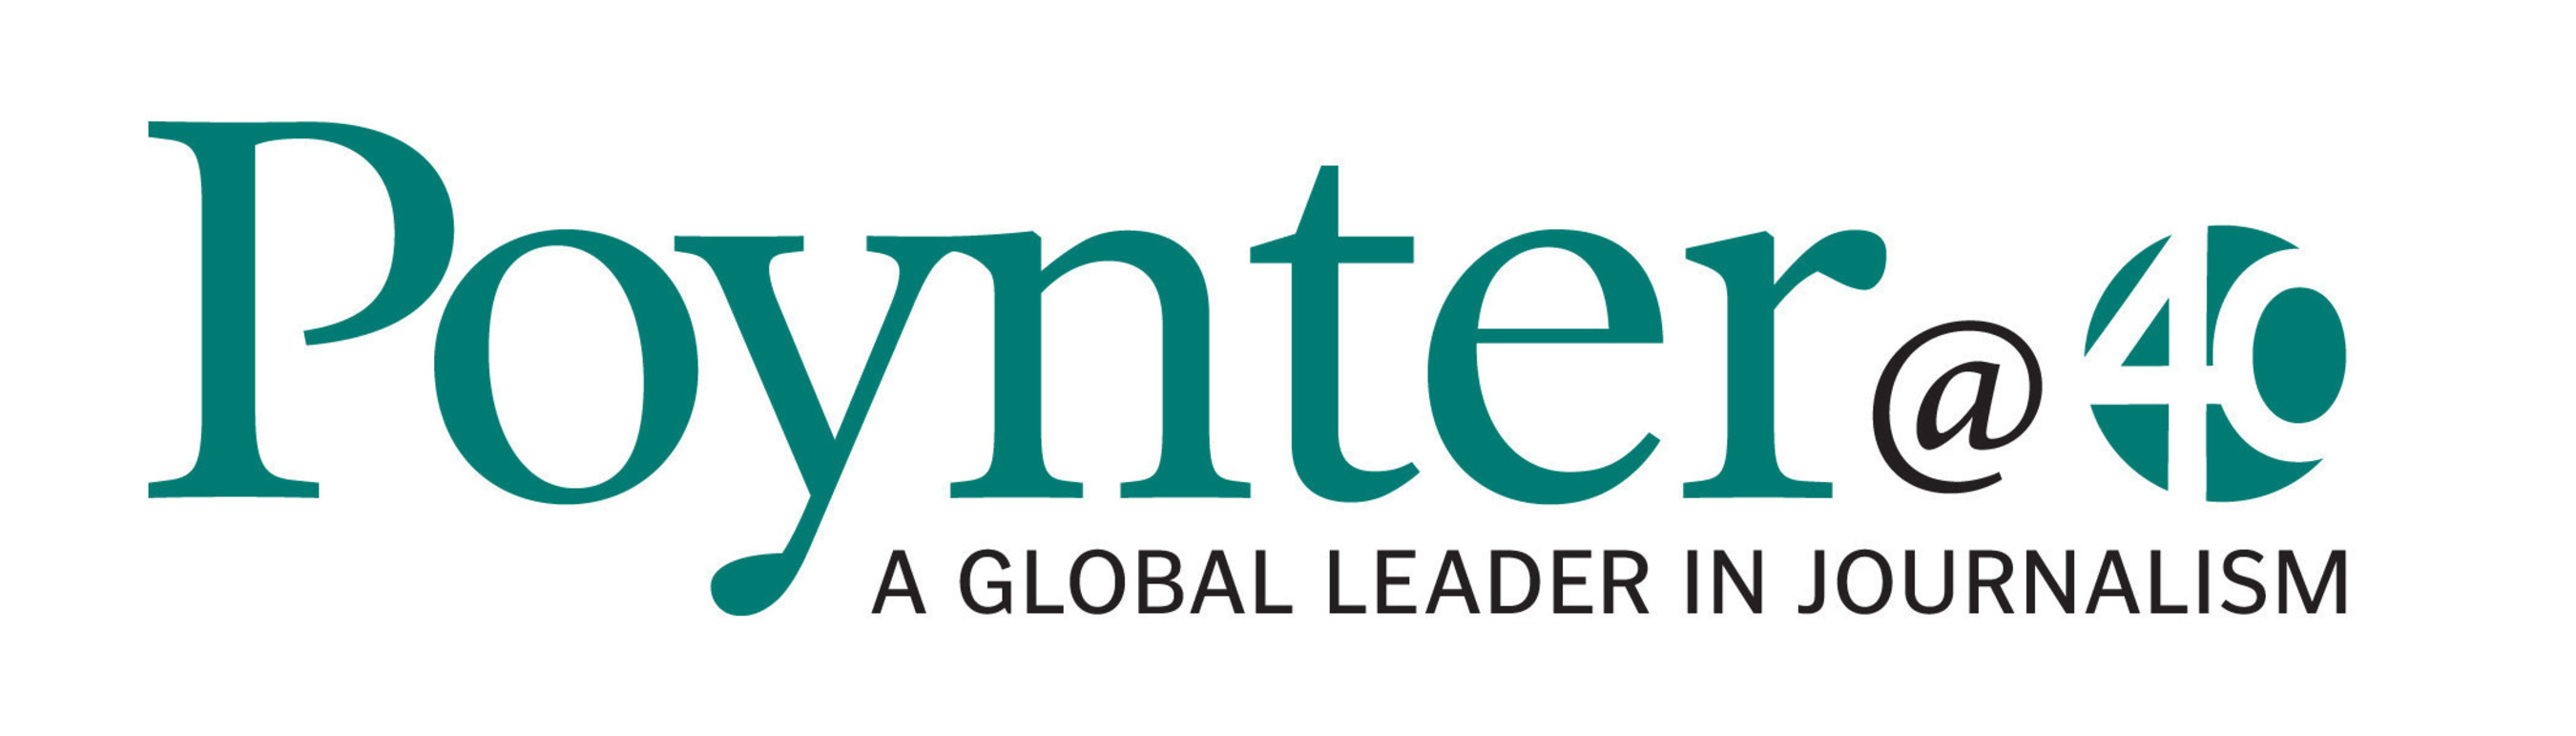 Poynter Institute Logo